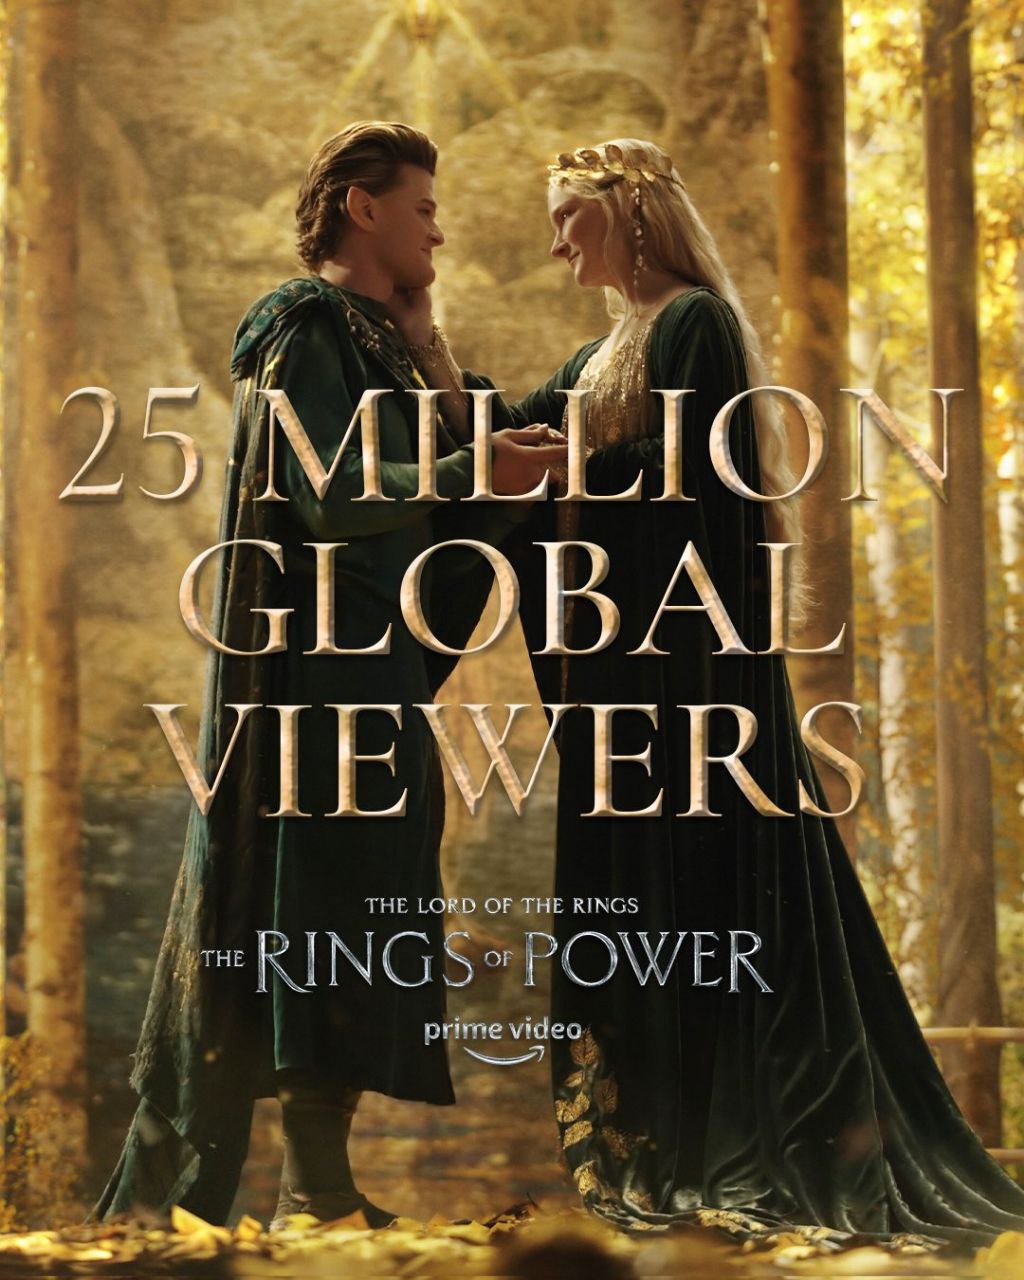 «Властелин колец: Кольца власти» посмотрели 25 млн человек — это крупнейшая премьера на Amazon